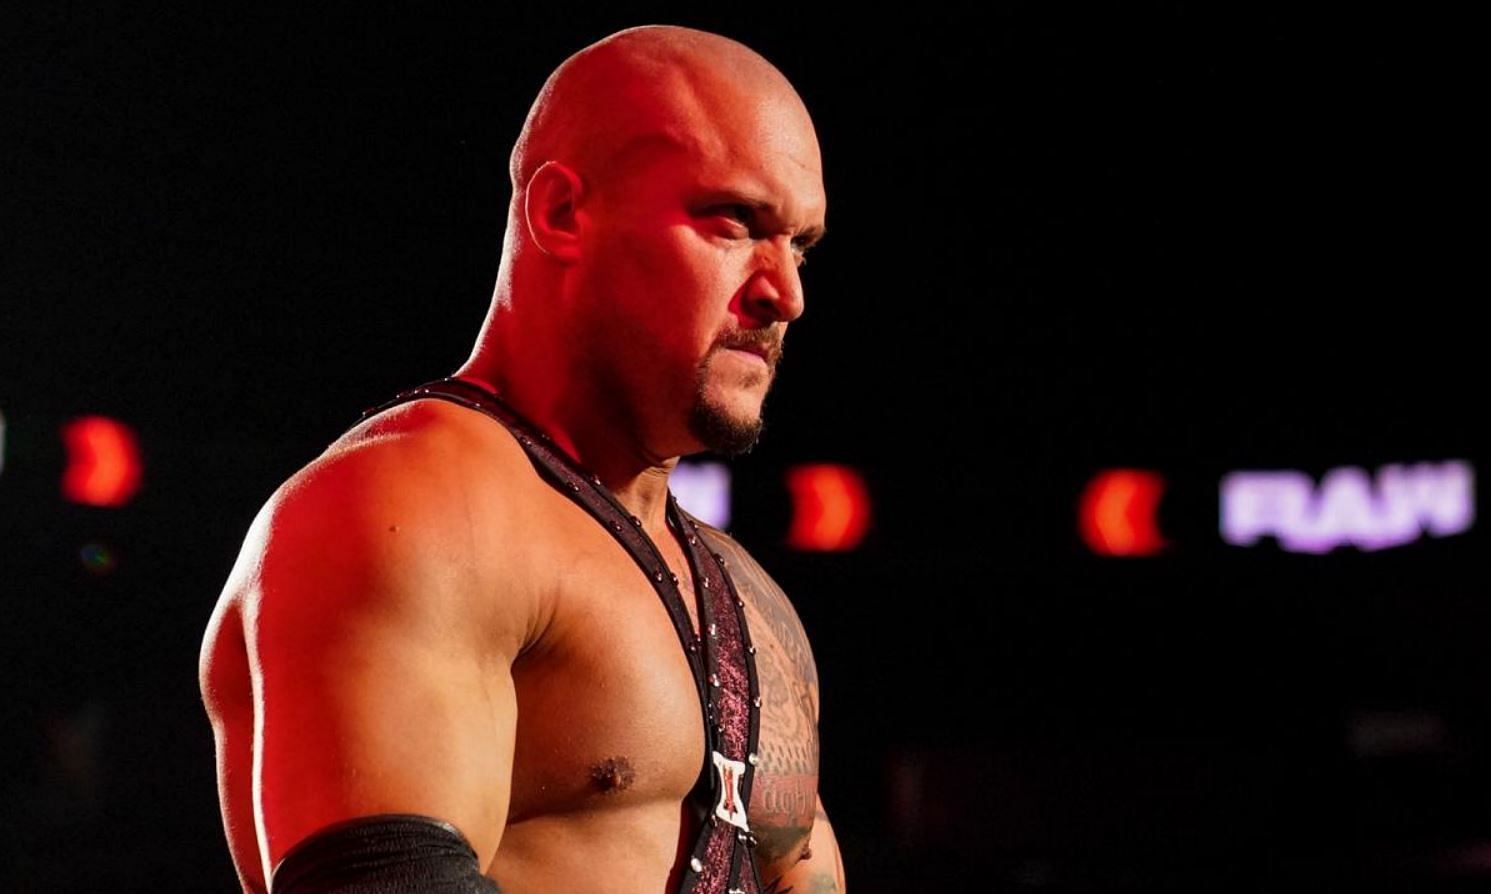 Kross was released from WWE in late 2021